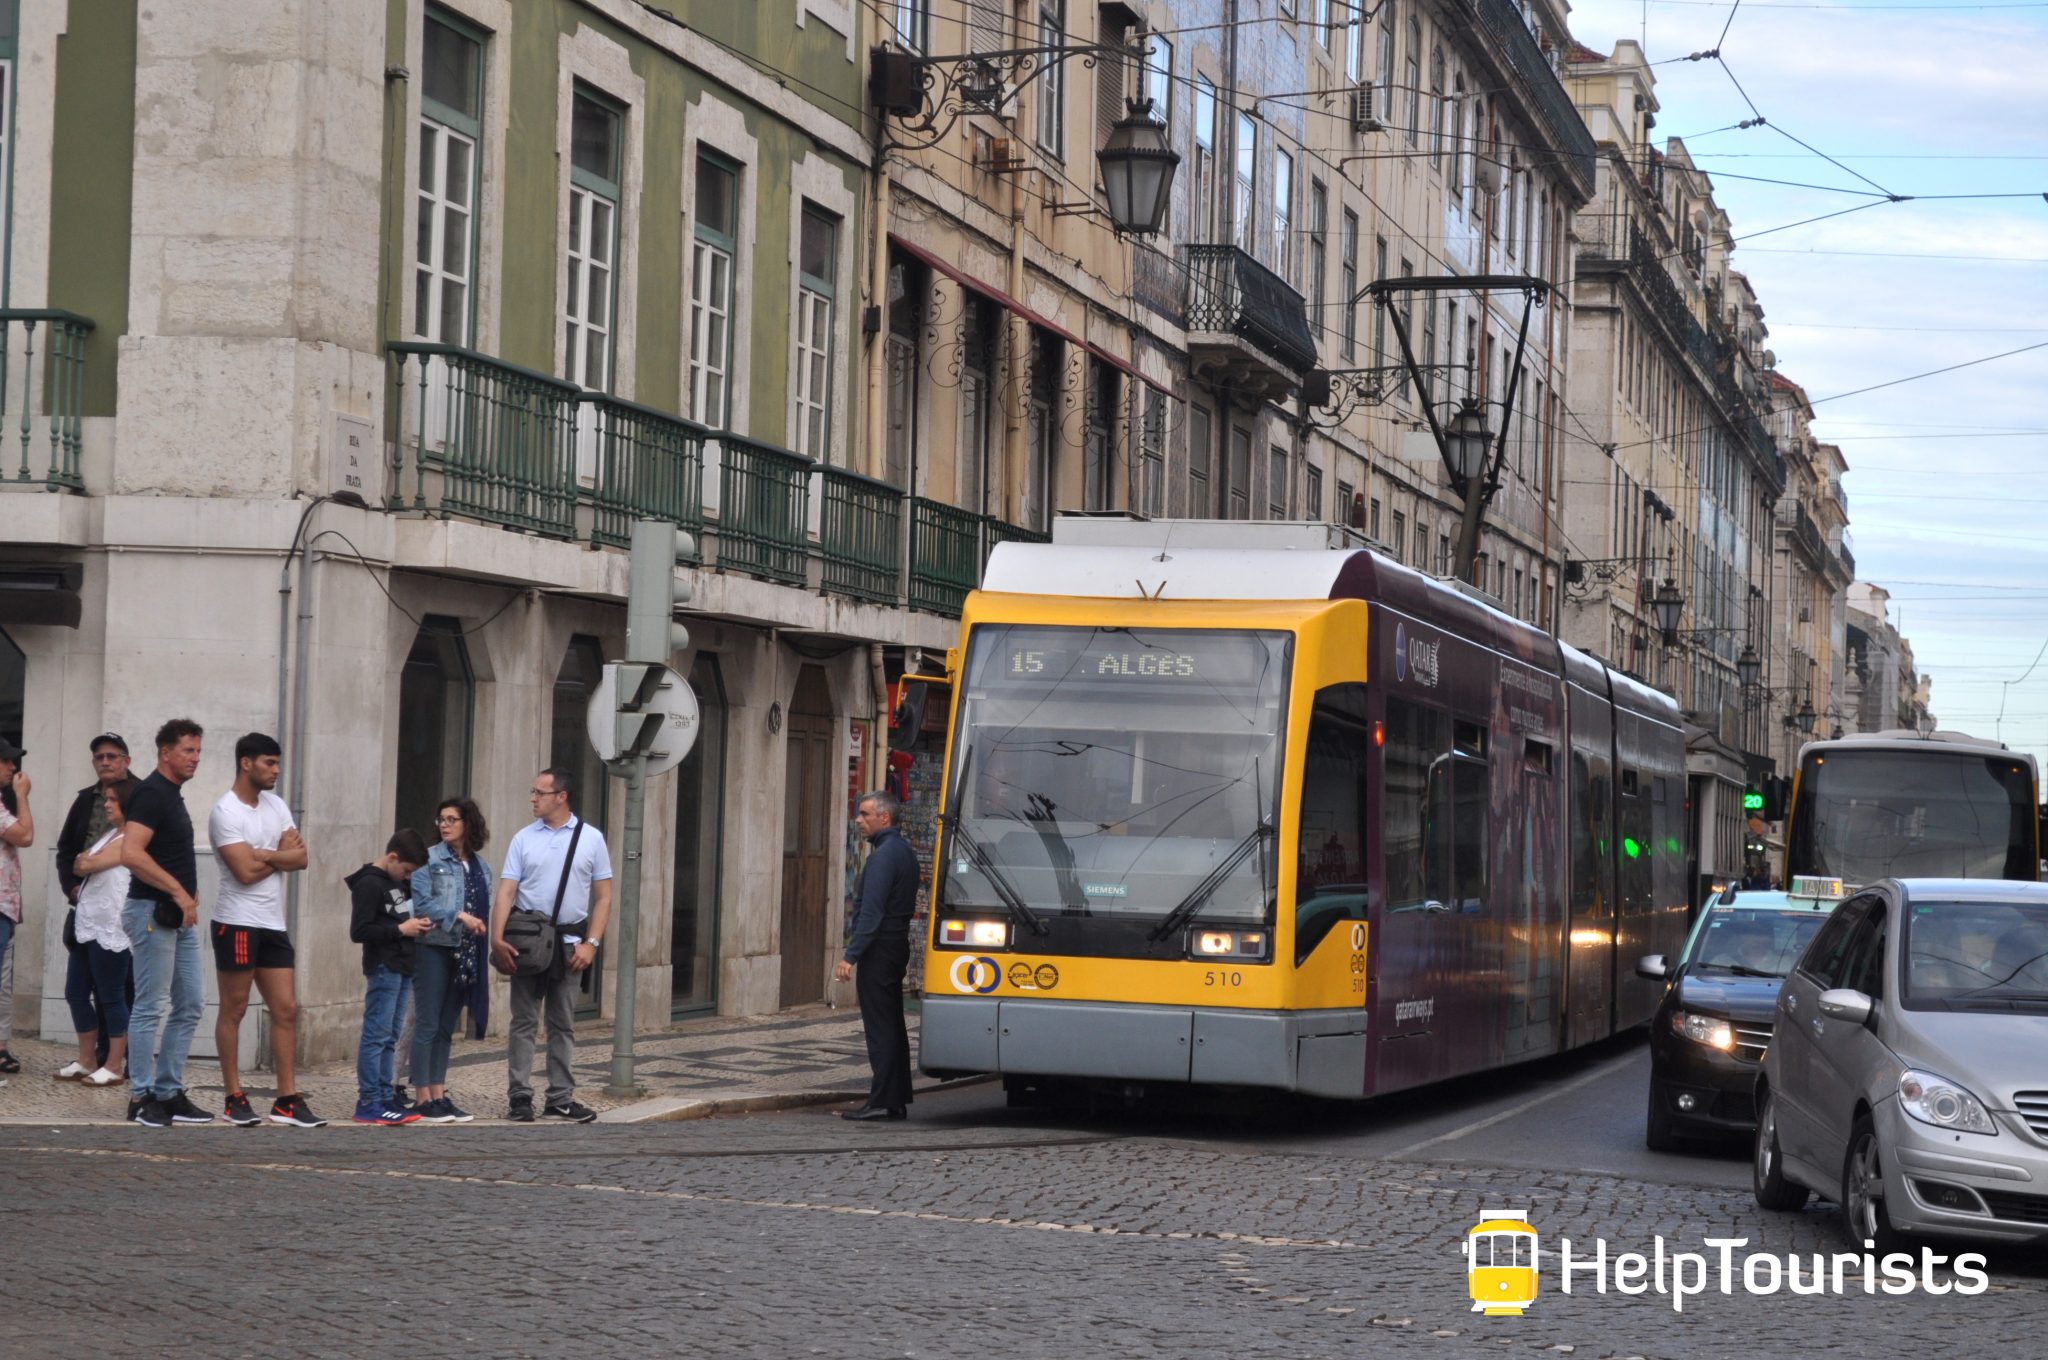 Lissabon Tram 15 Alges